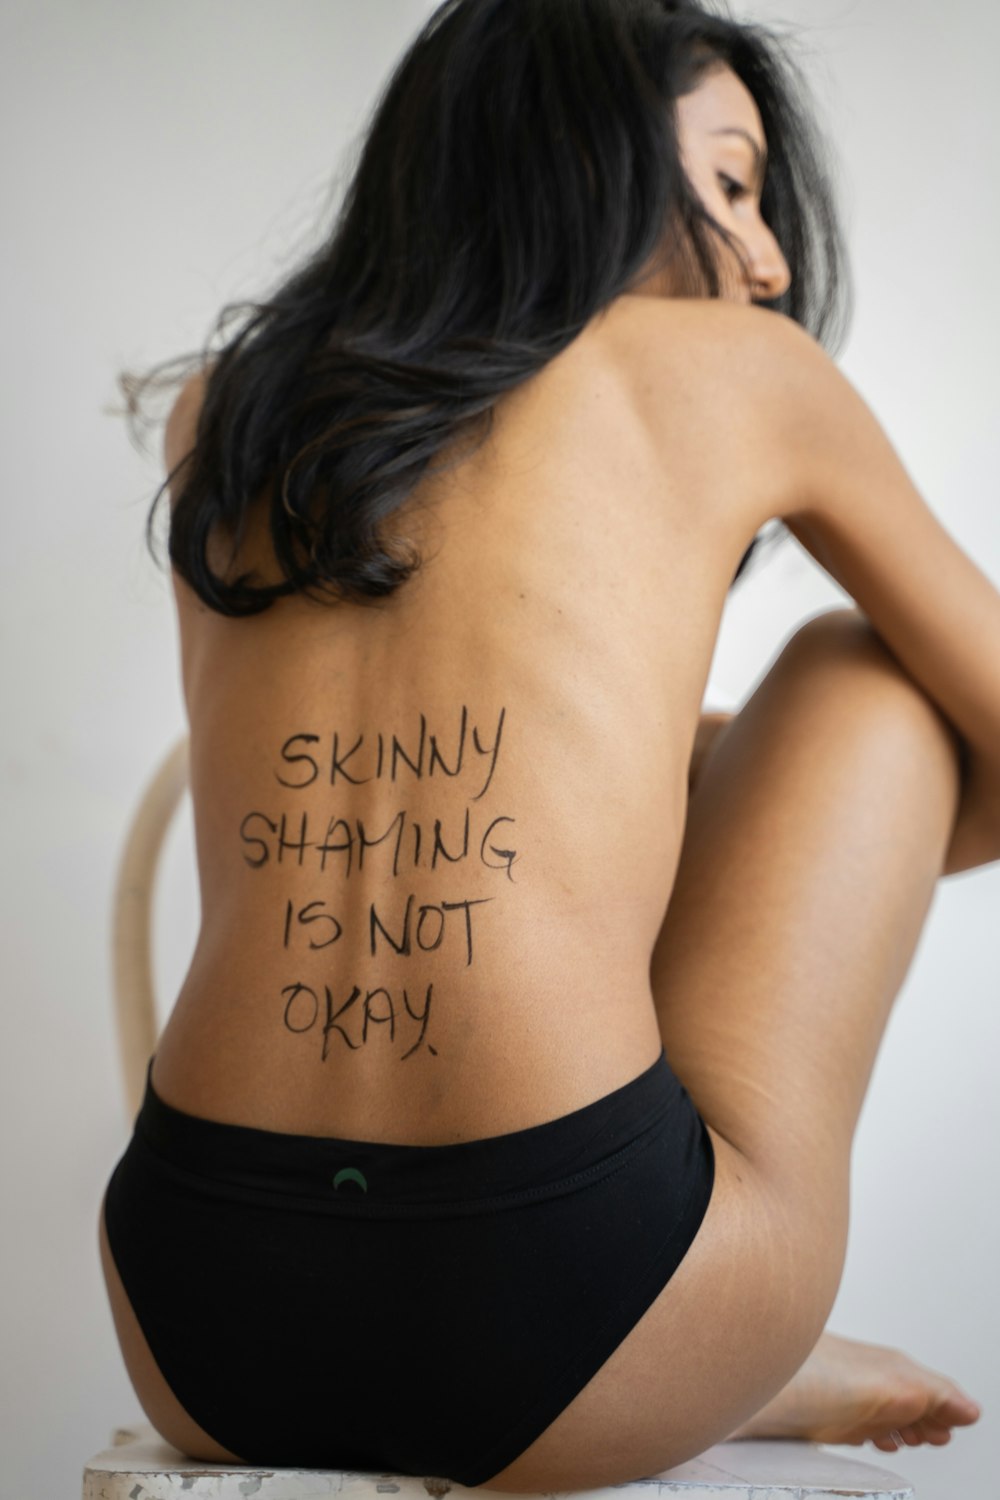 Una mujer con un tatuaje en la espalda diciendo que avergonzarse flacamente no está bien